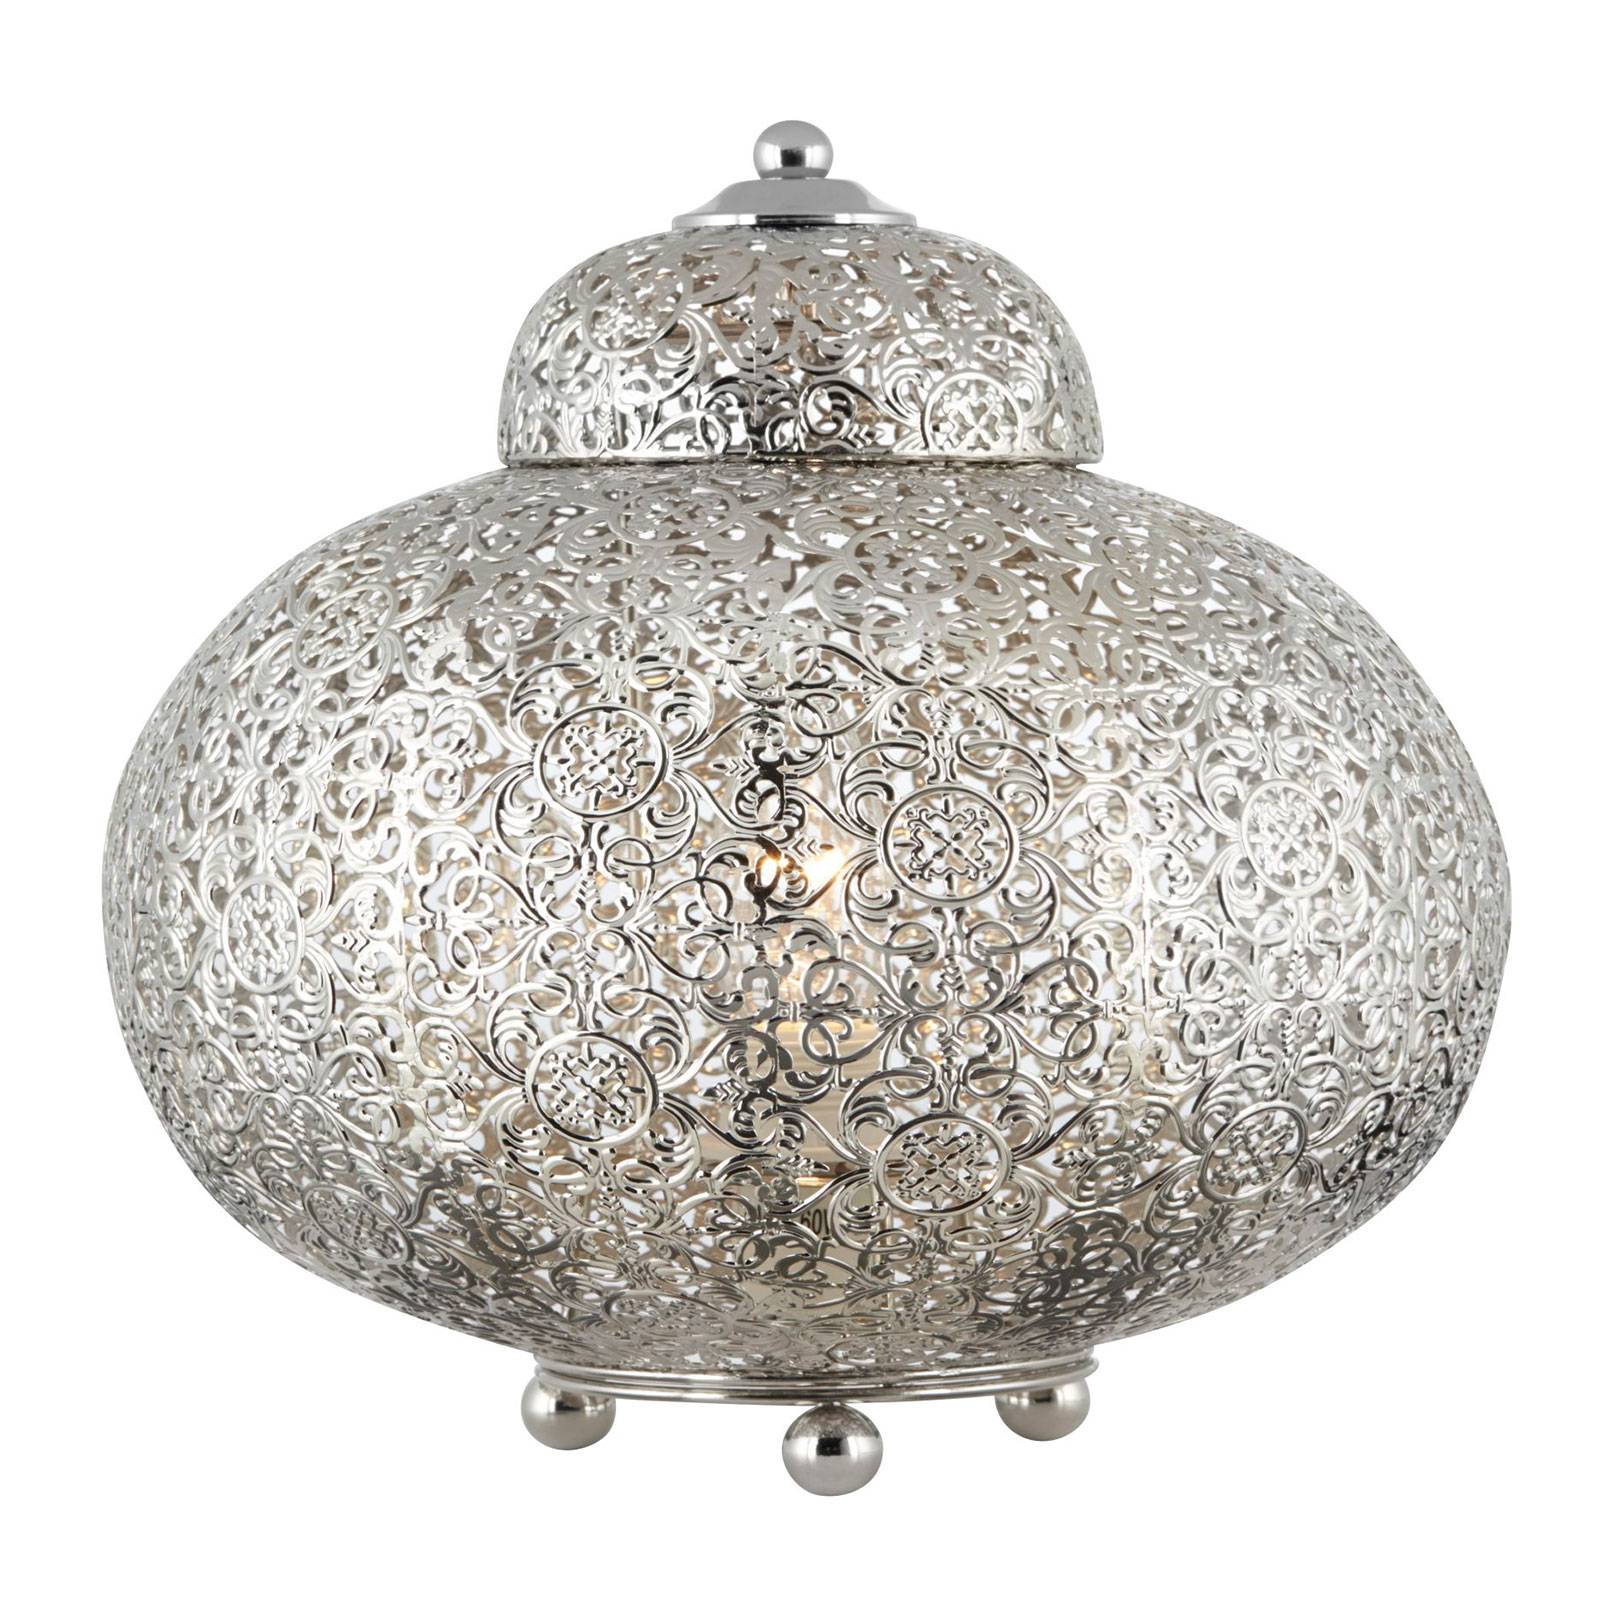 Tischlampe Moroccan Fretwork in Nickel glänzend von Searchlight